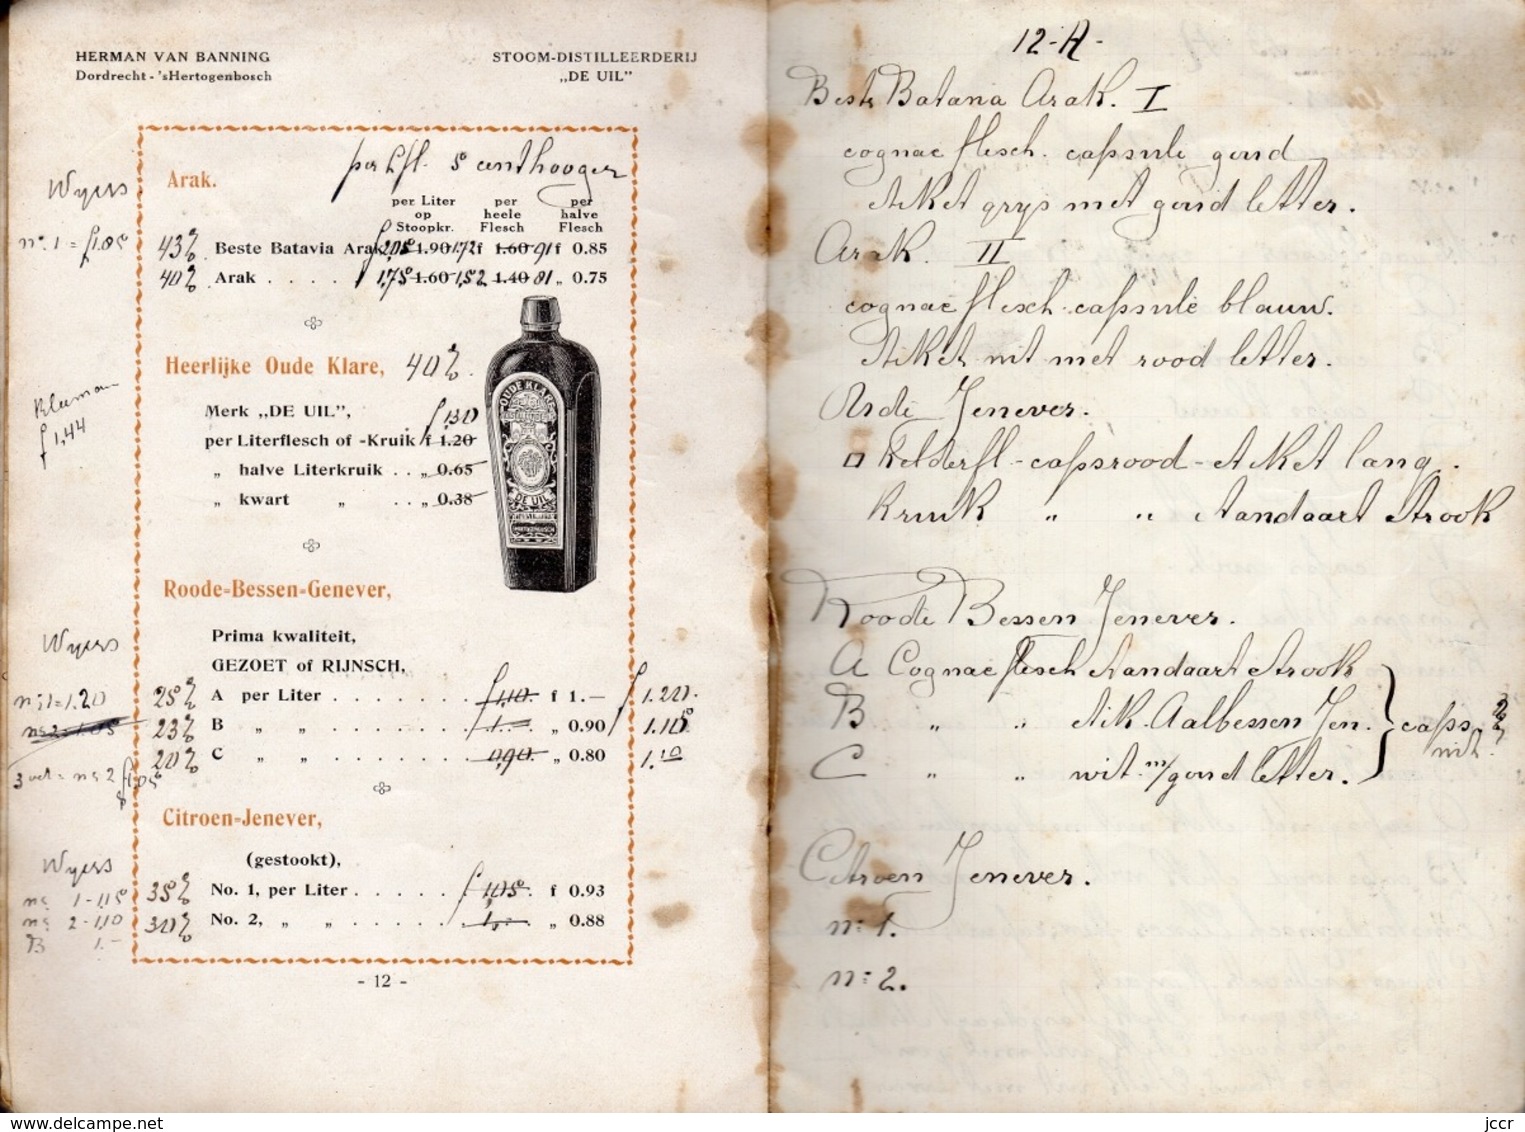 Prijs-courant 1915 van Herman van Banning - Stoom-Distilleerderij "de uil" - Dordrecht 's Hertogenbosch - Holland